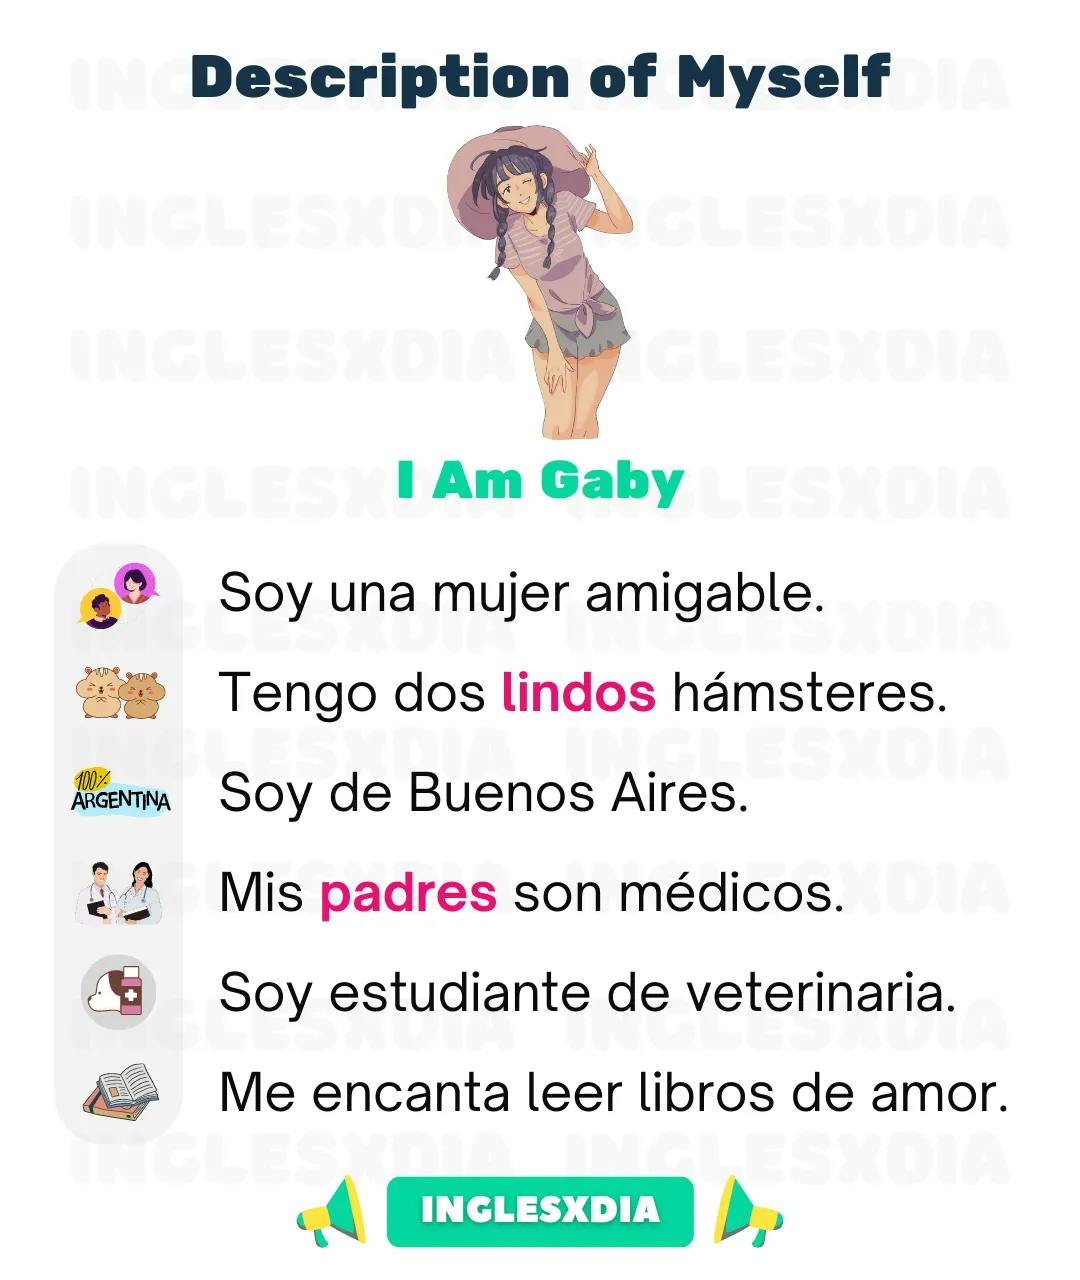 Curso de inglés en línea: Description of Myself · I Am Gaby